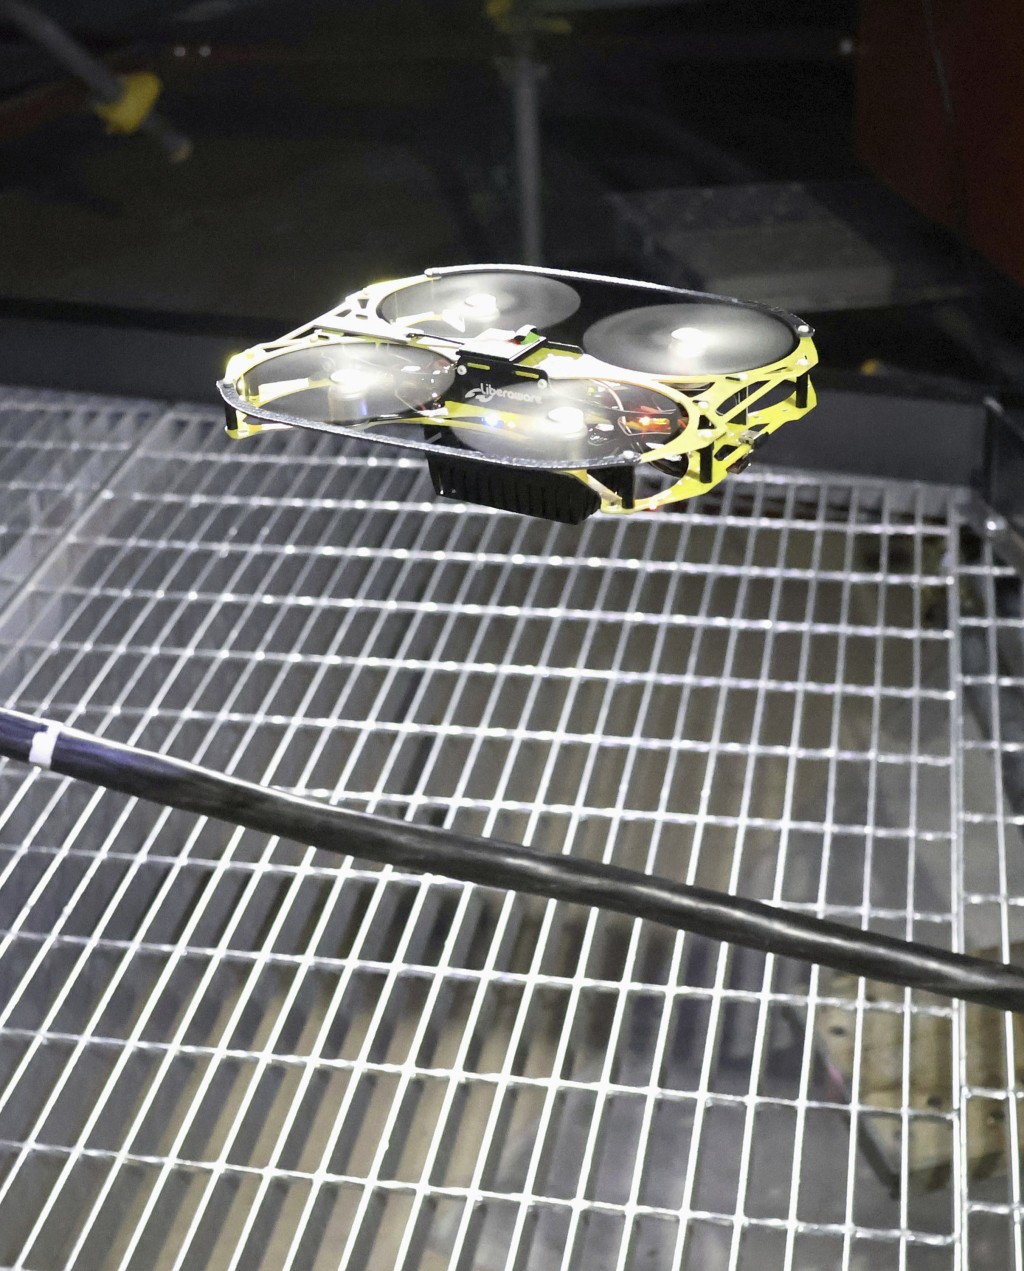 蛇型機械人負責為無人機中轉無線信號，用於調查福島第一核電站1號機組反應堆安全殼內未積水區域。。美聯社